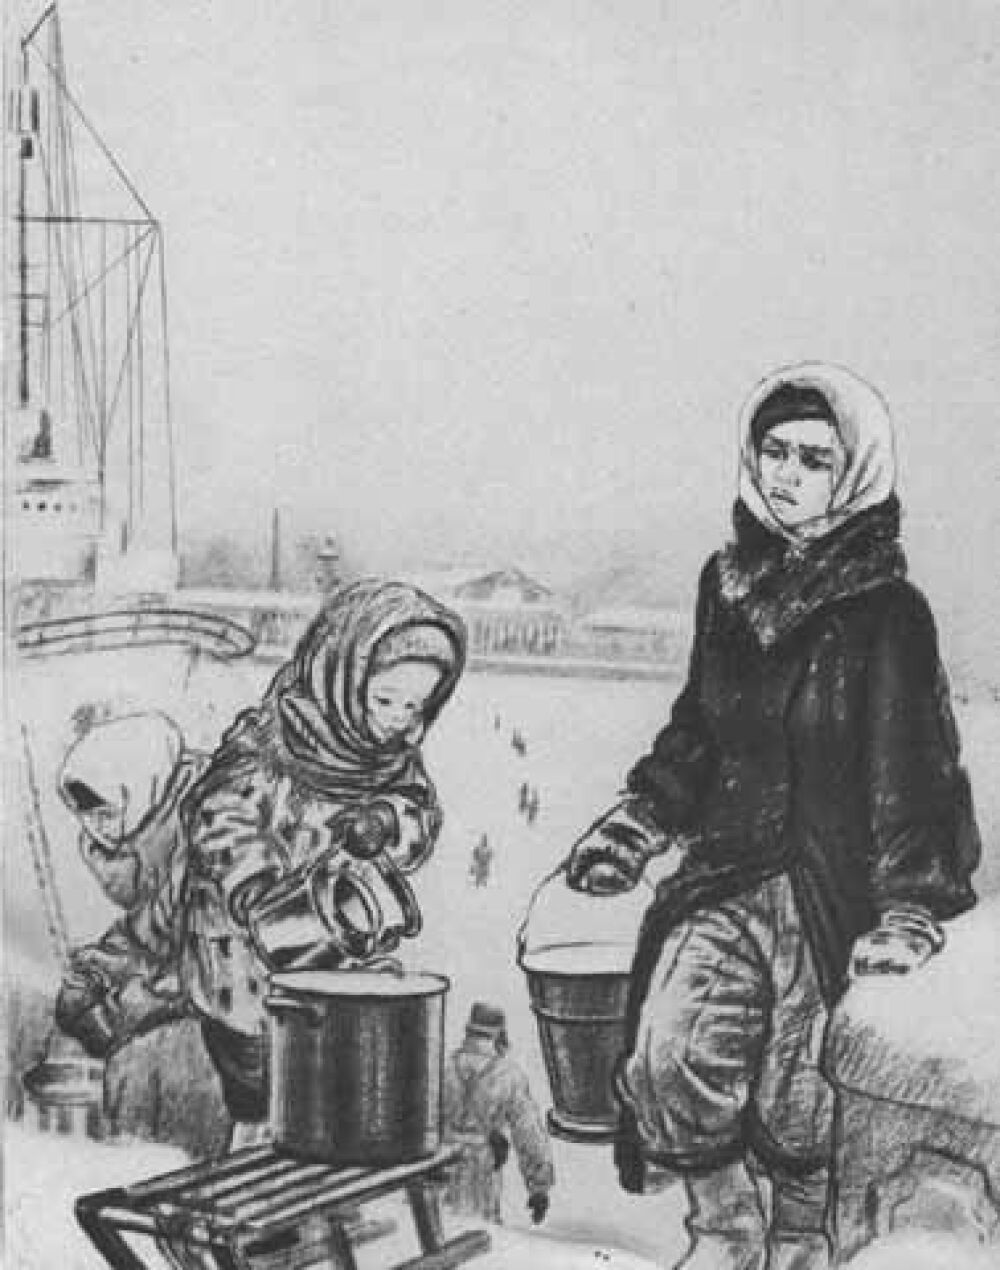 Zeichnung von A. Pachomow, »Na Newu, za wodoj« ( »Zur Newa, Wasser holen«), 1942, aus der Serie »Leningrad in den Blockadetagen«